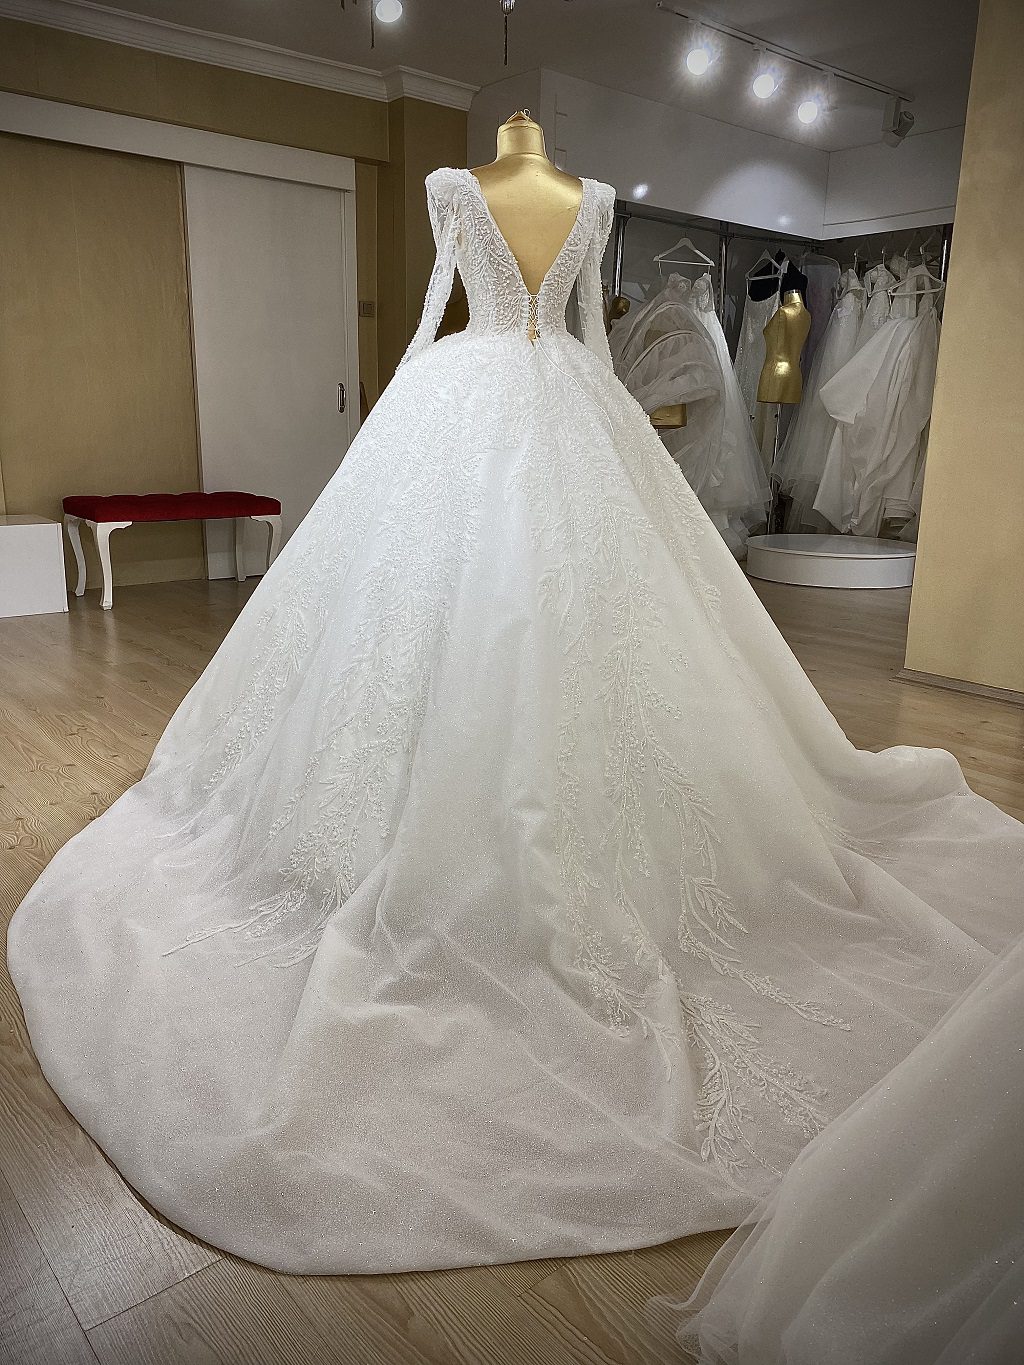 Belinda - wholesale wedding dress - back